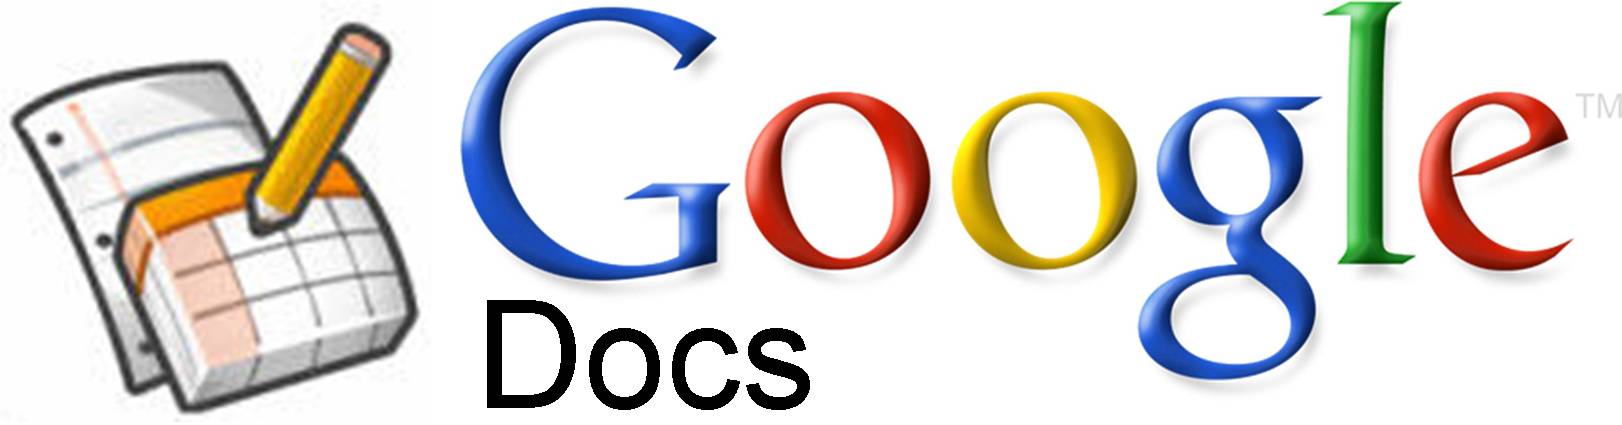 Https docs g. Google документы. Google документы картинки. Гугл ДОКС логотип. Гугл документы лого.